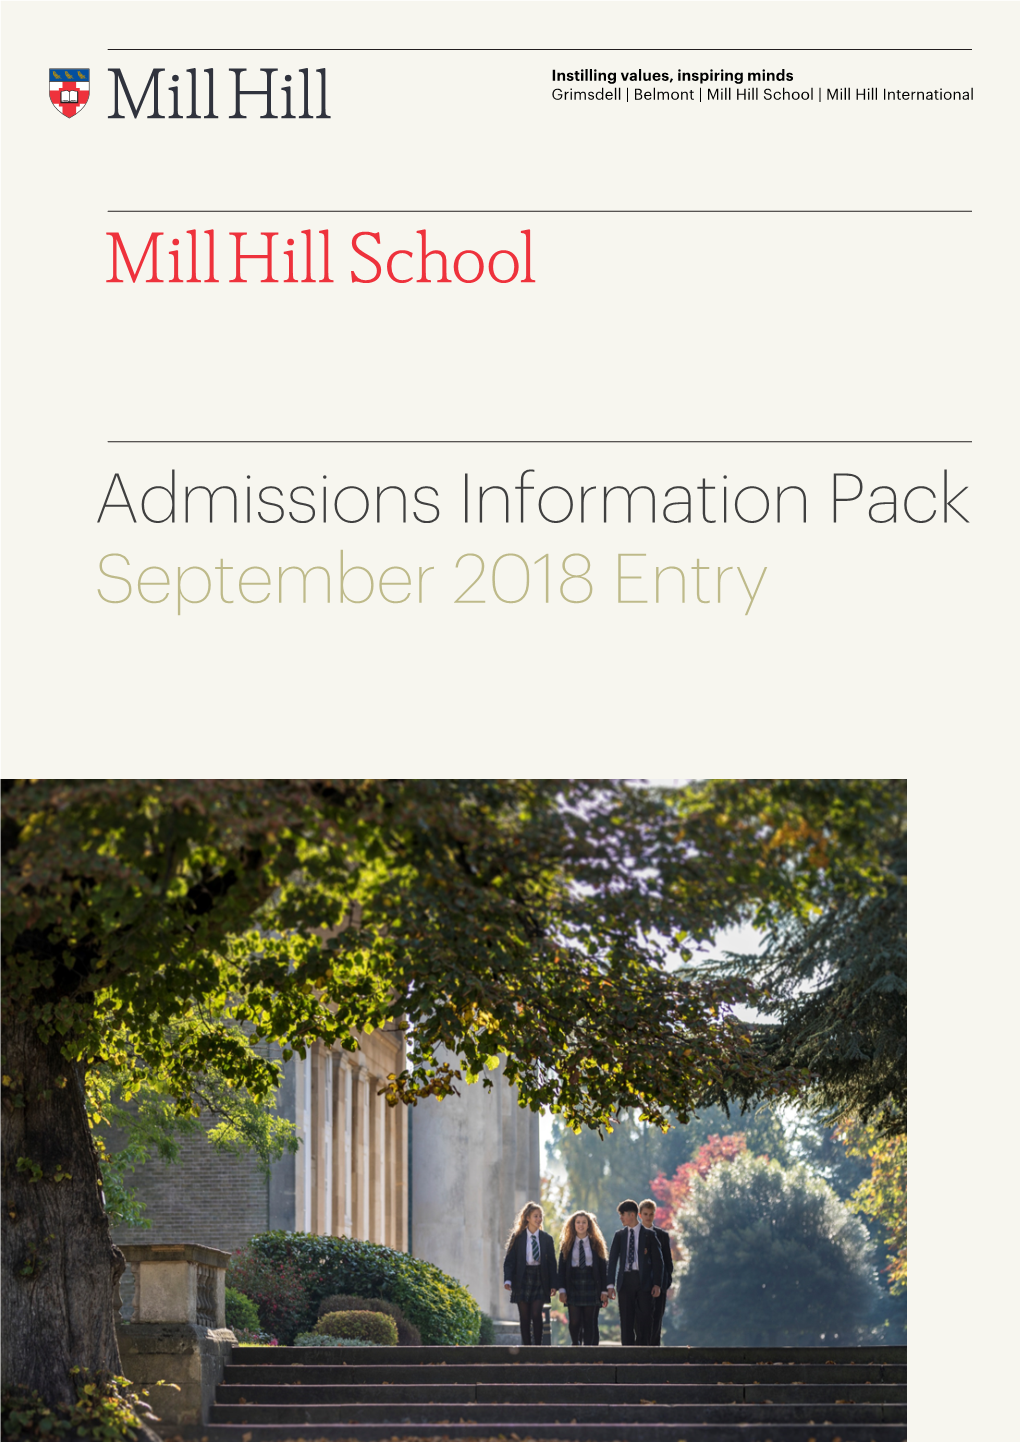 Mill Hill School Instilling Values, Inspiring Minds | Grimsdell | Belmont | Mill Hill School | Mill Hill International